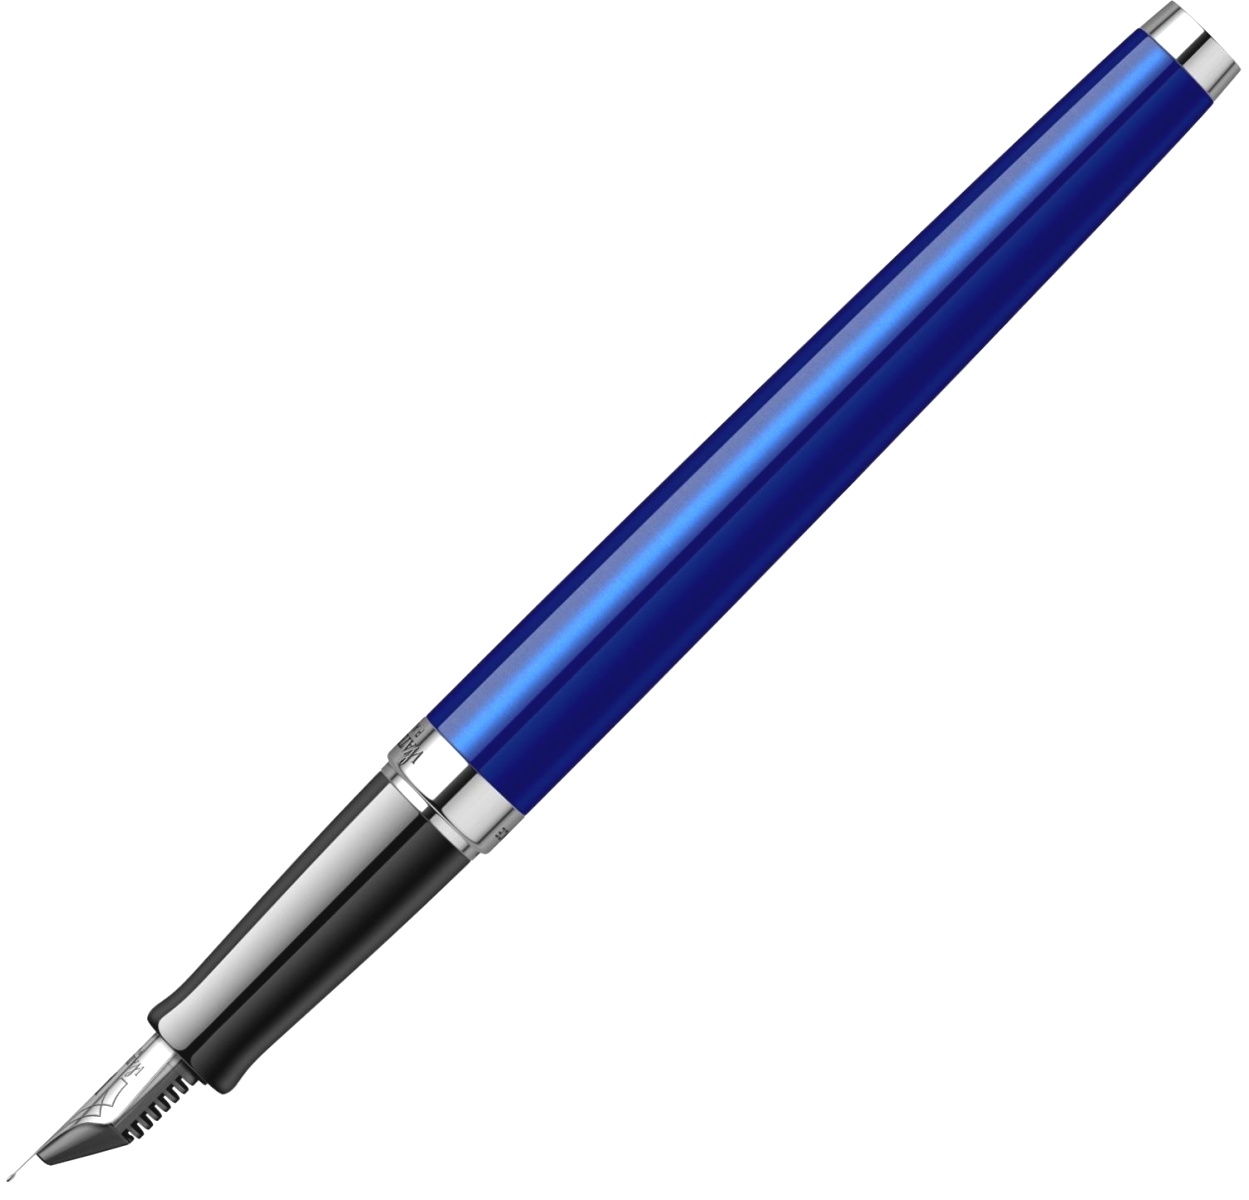  Ручка перьевая Waterman Hemisphere 2018, Bright Blue CT (Перо F), фото 5